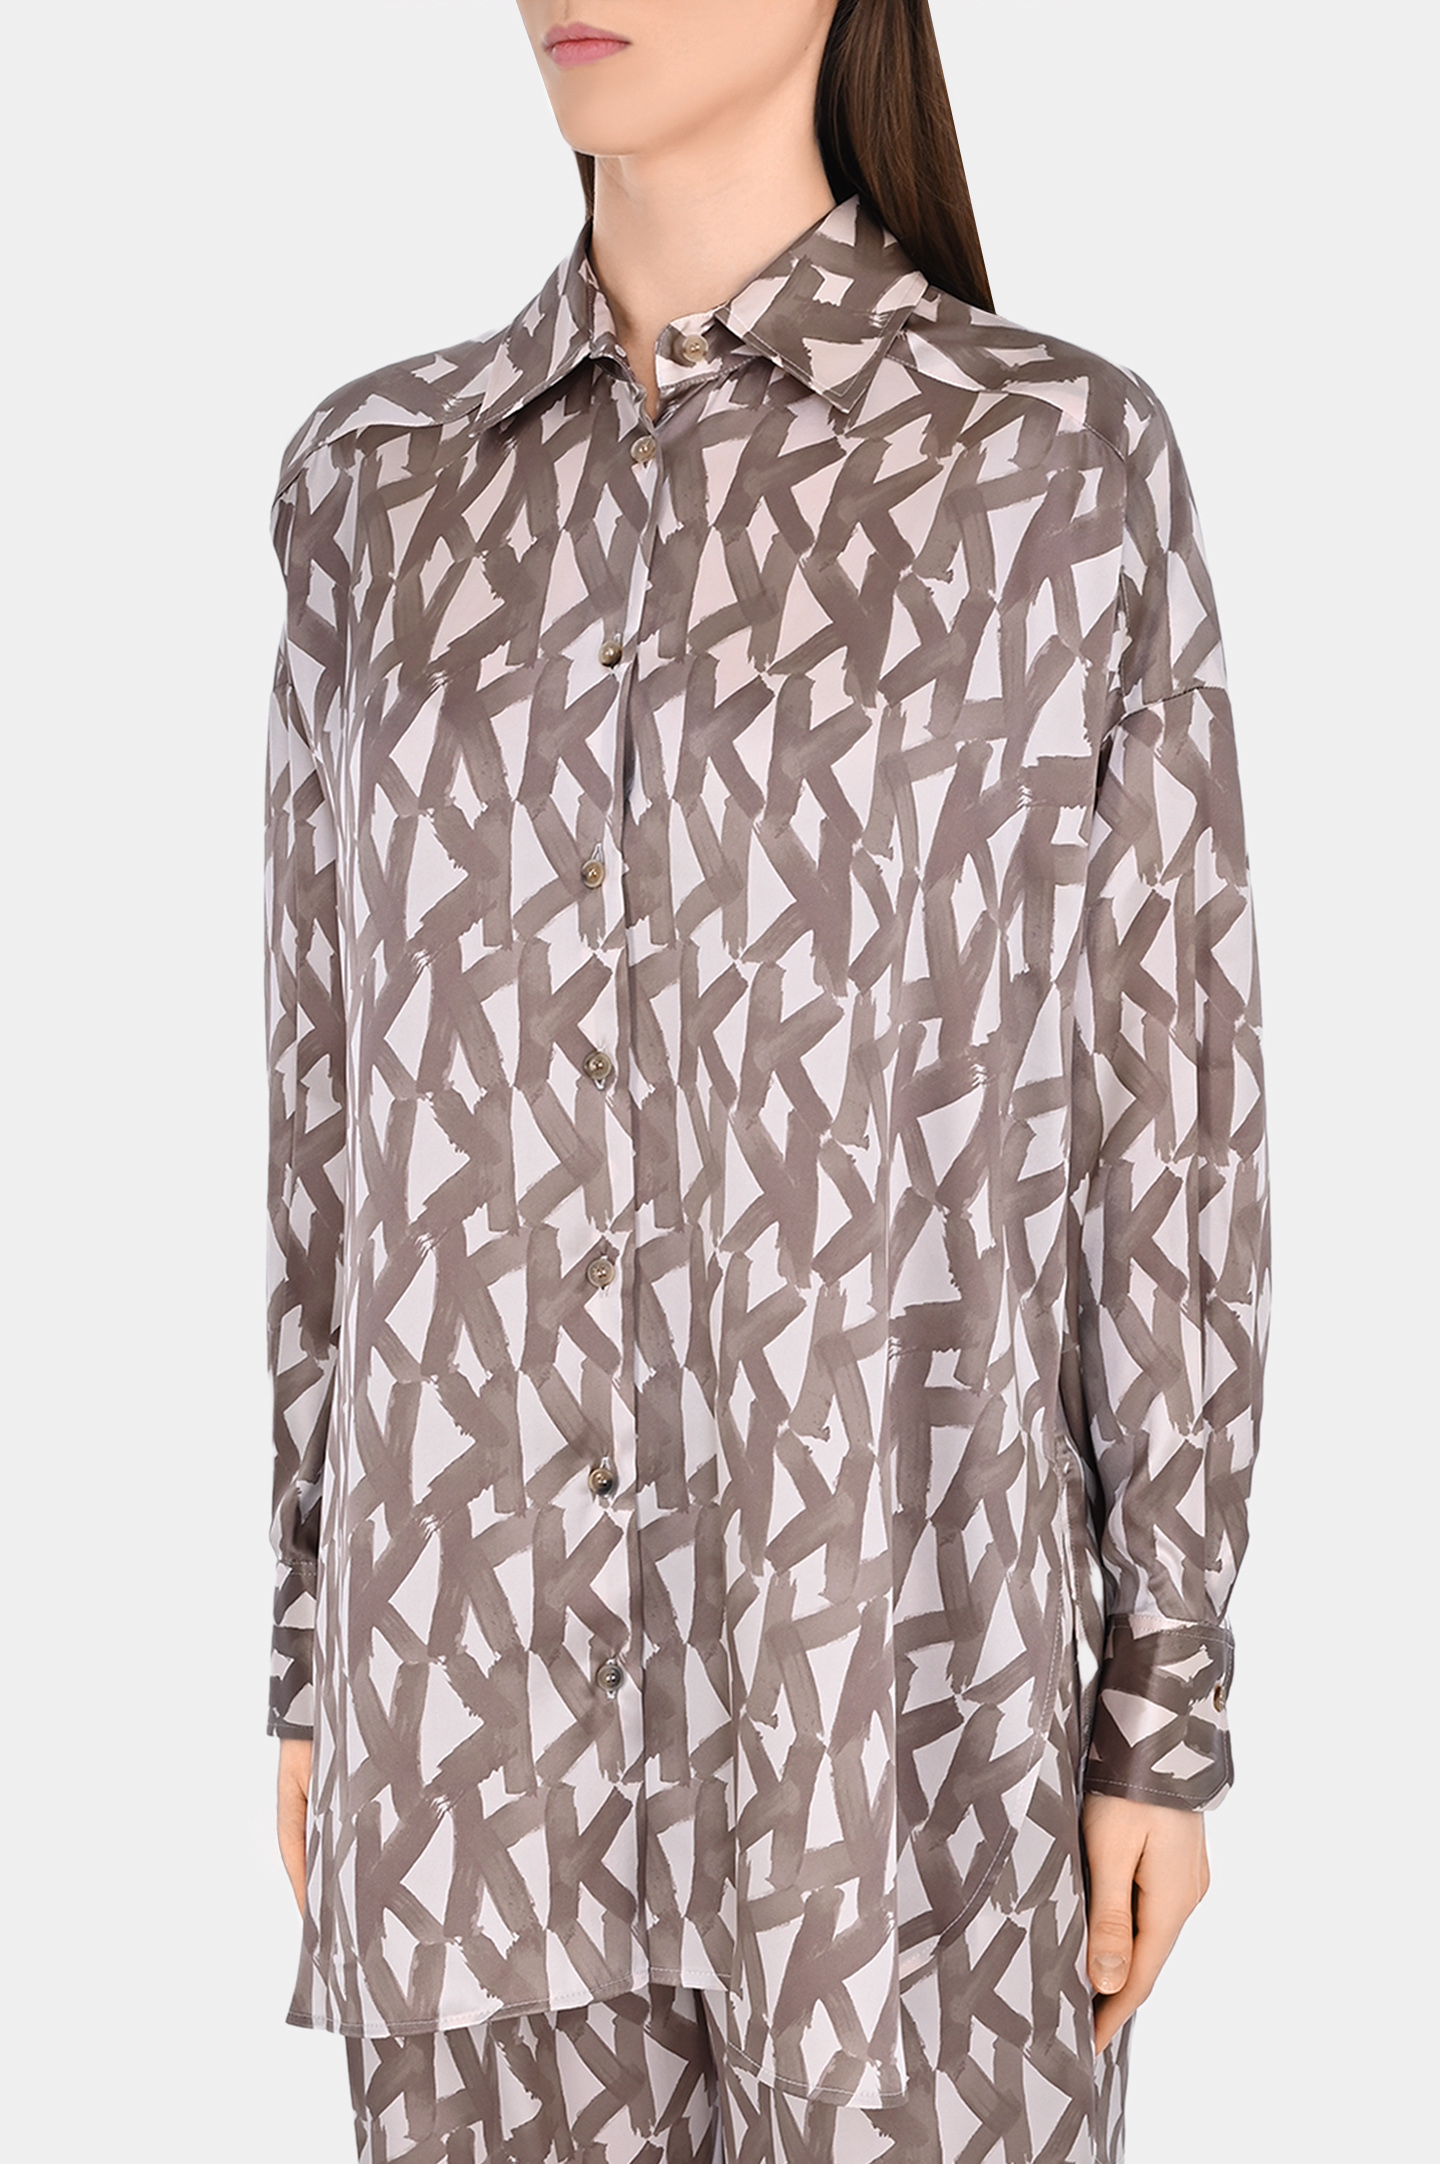 Шелковая блуза с принтом KITON D51402K0978C1, цвет: Бежевый, Женский